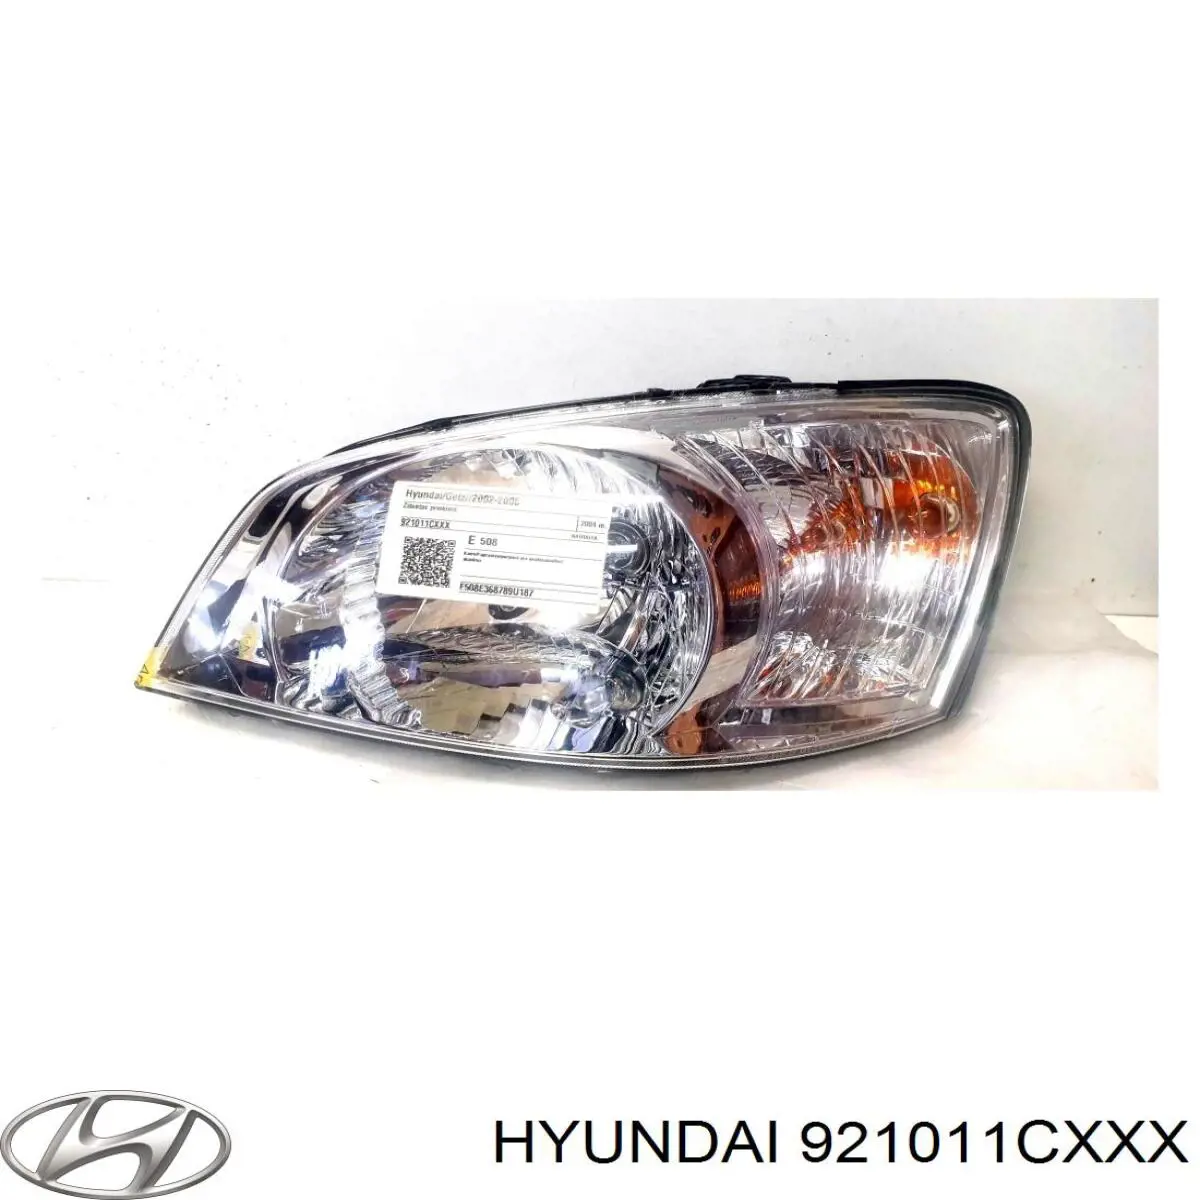 921011CXXX Hyundai/Kia faro izquierdo